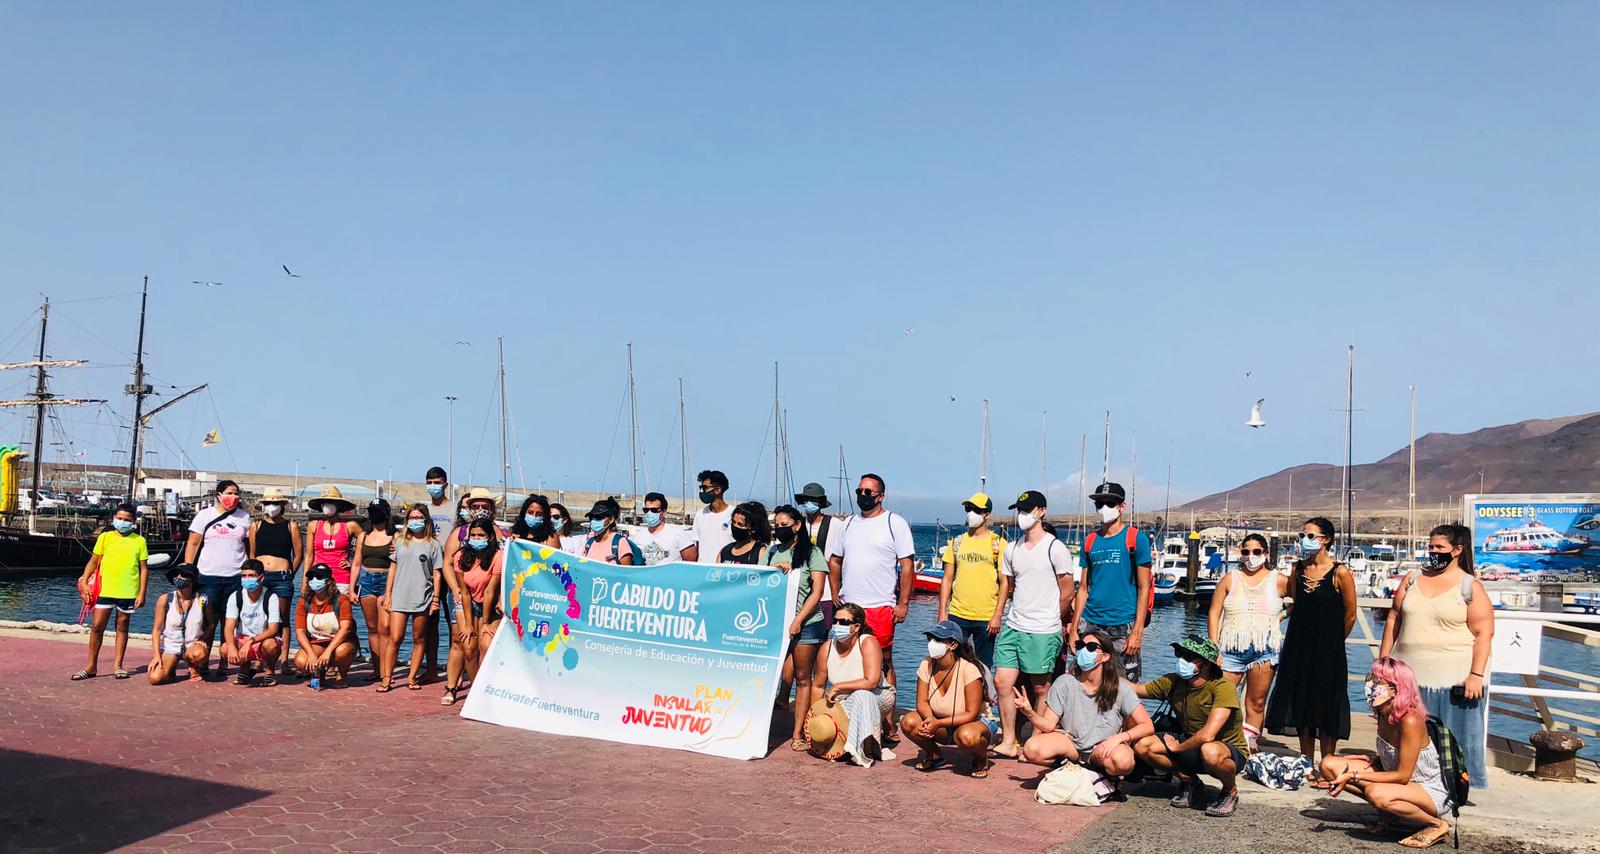 50 jóvenes participaron este fin de semana en las actividades de Actívate Verano 2020 del Cabildo de Fuerteventura